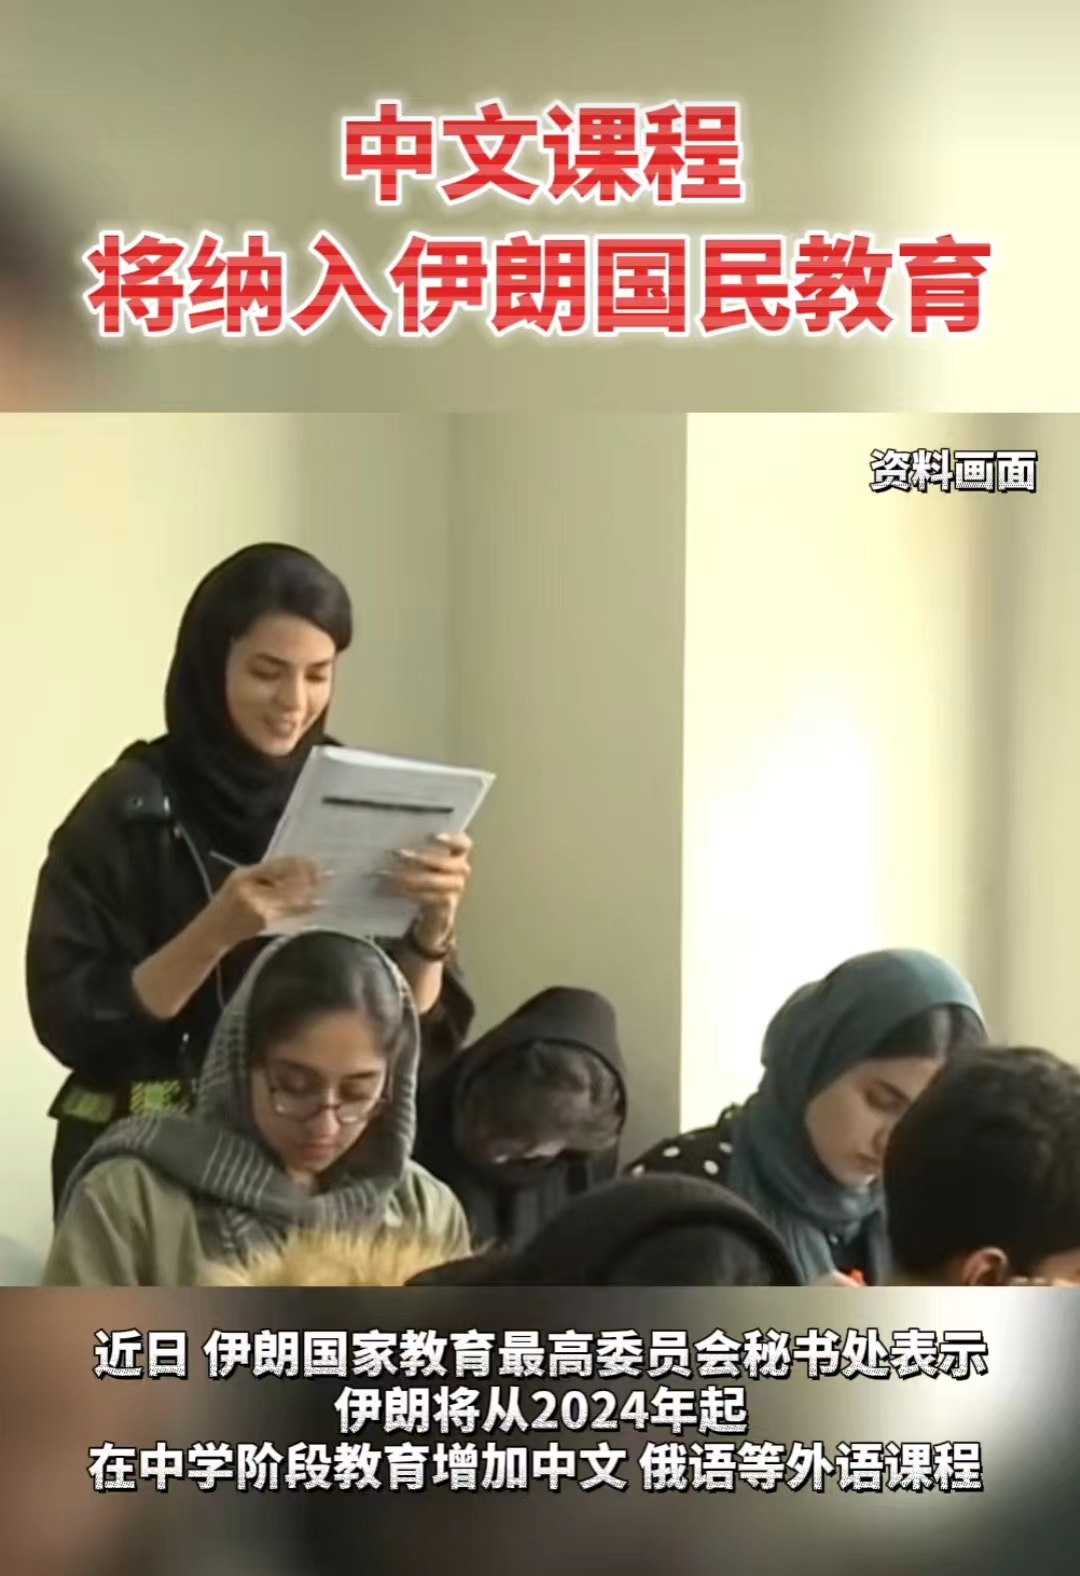 中文课程将纳入伊朗国民教育